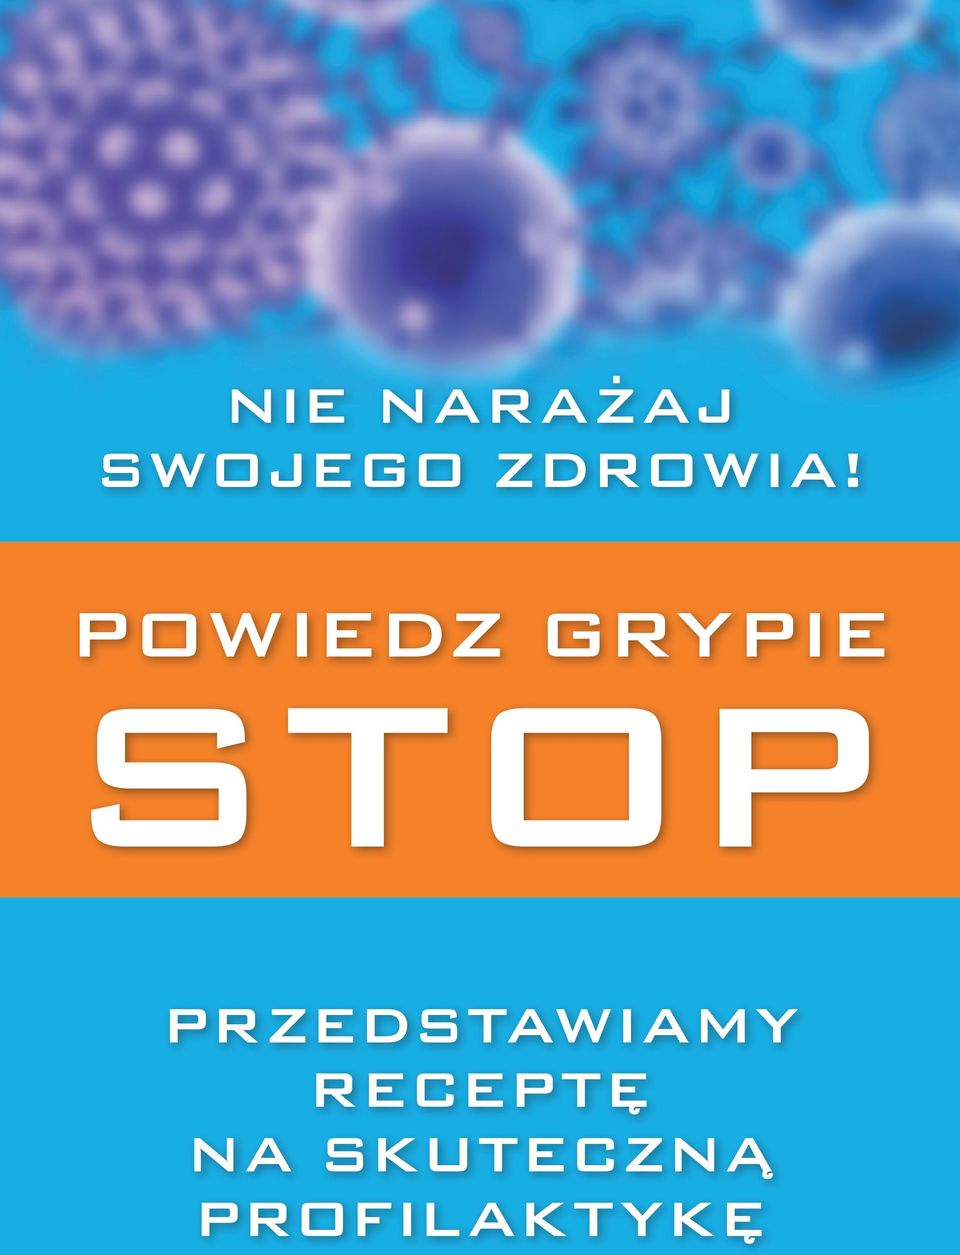 POWIEDZ grypie STOP